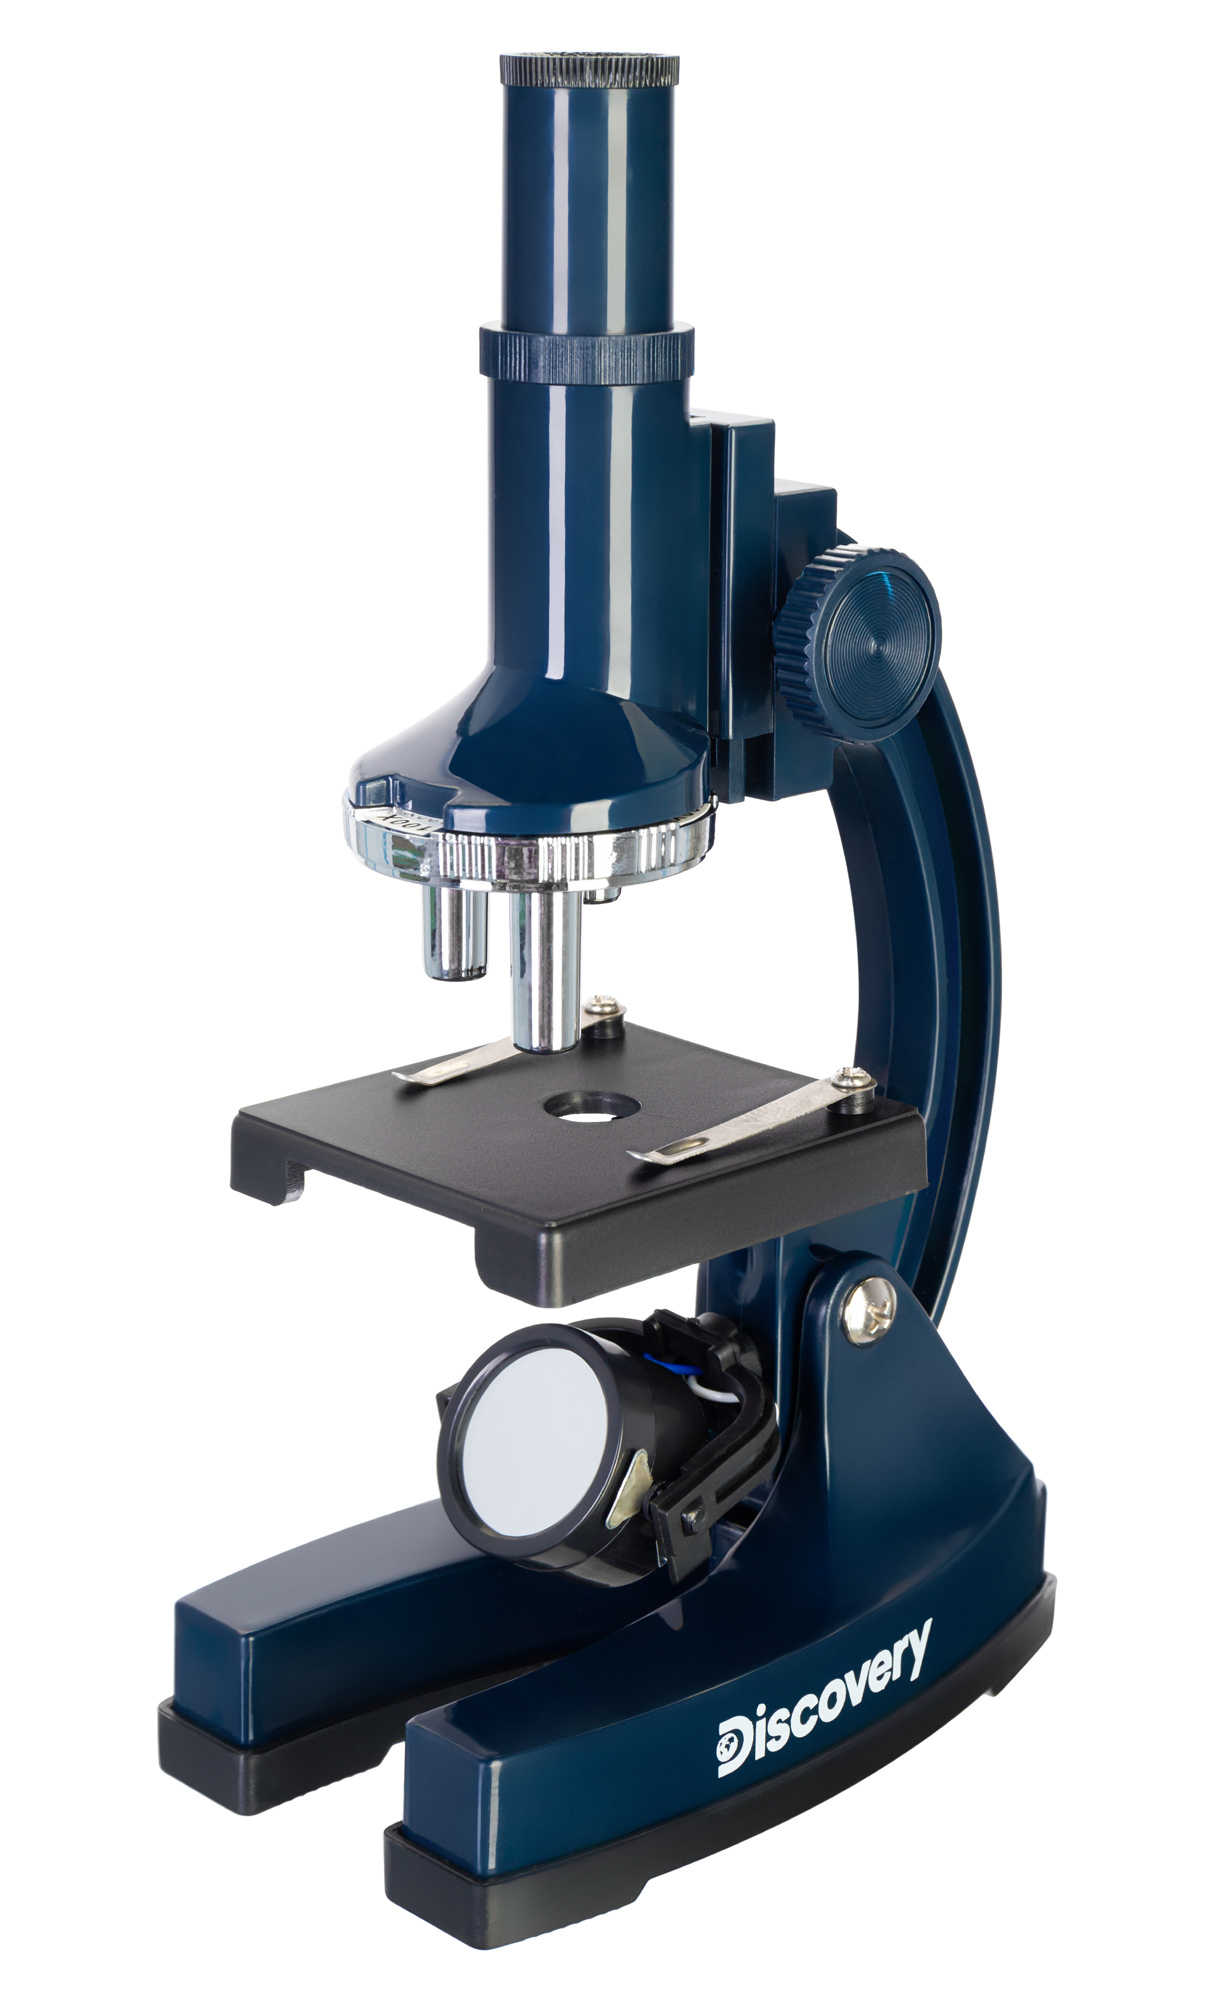 Микроскоп Levenhuk Discovery Centi 01 с книгой (выставочный образец)